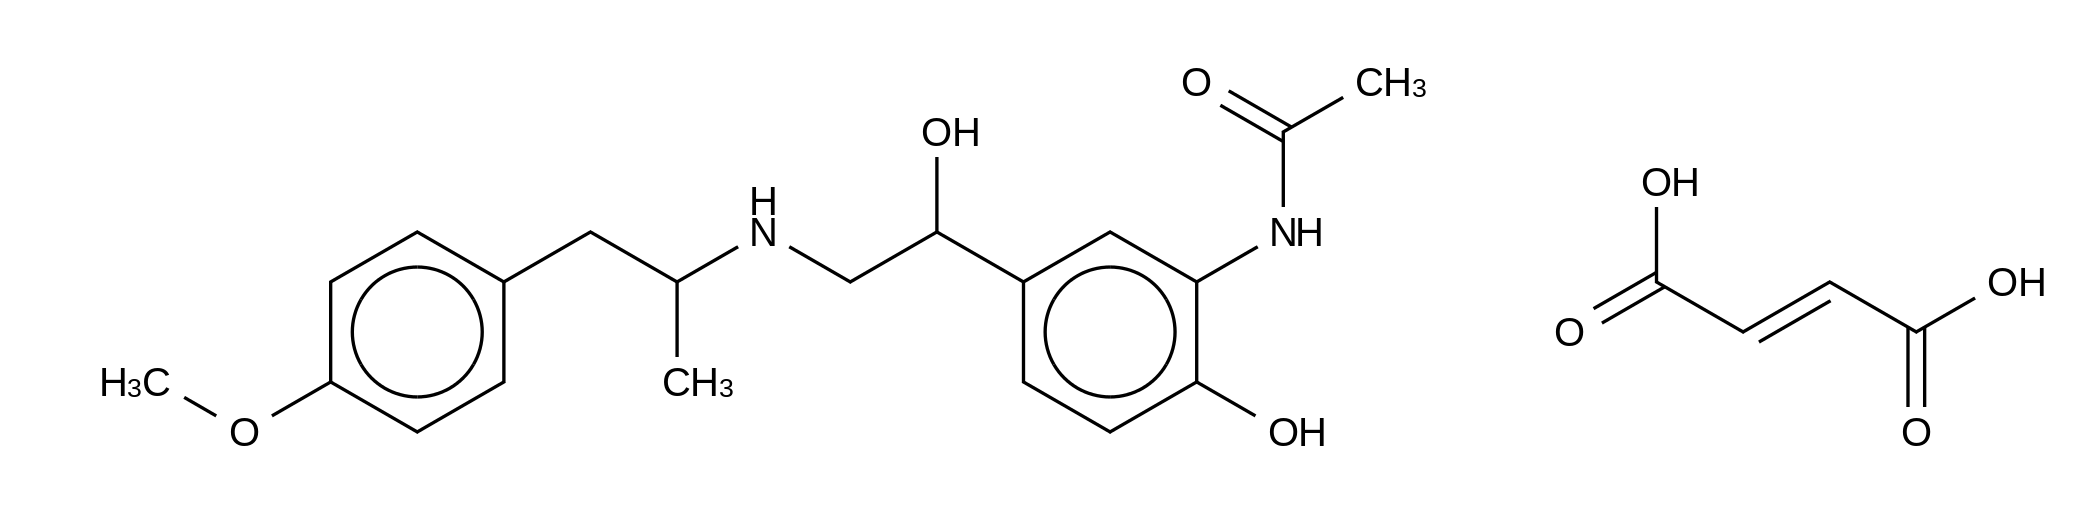 N-Deformyl-N-acetyl Formoterol Fumarate (Mixture of Diastereomers)